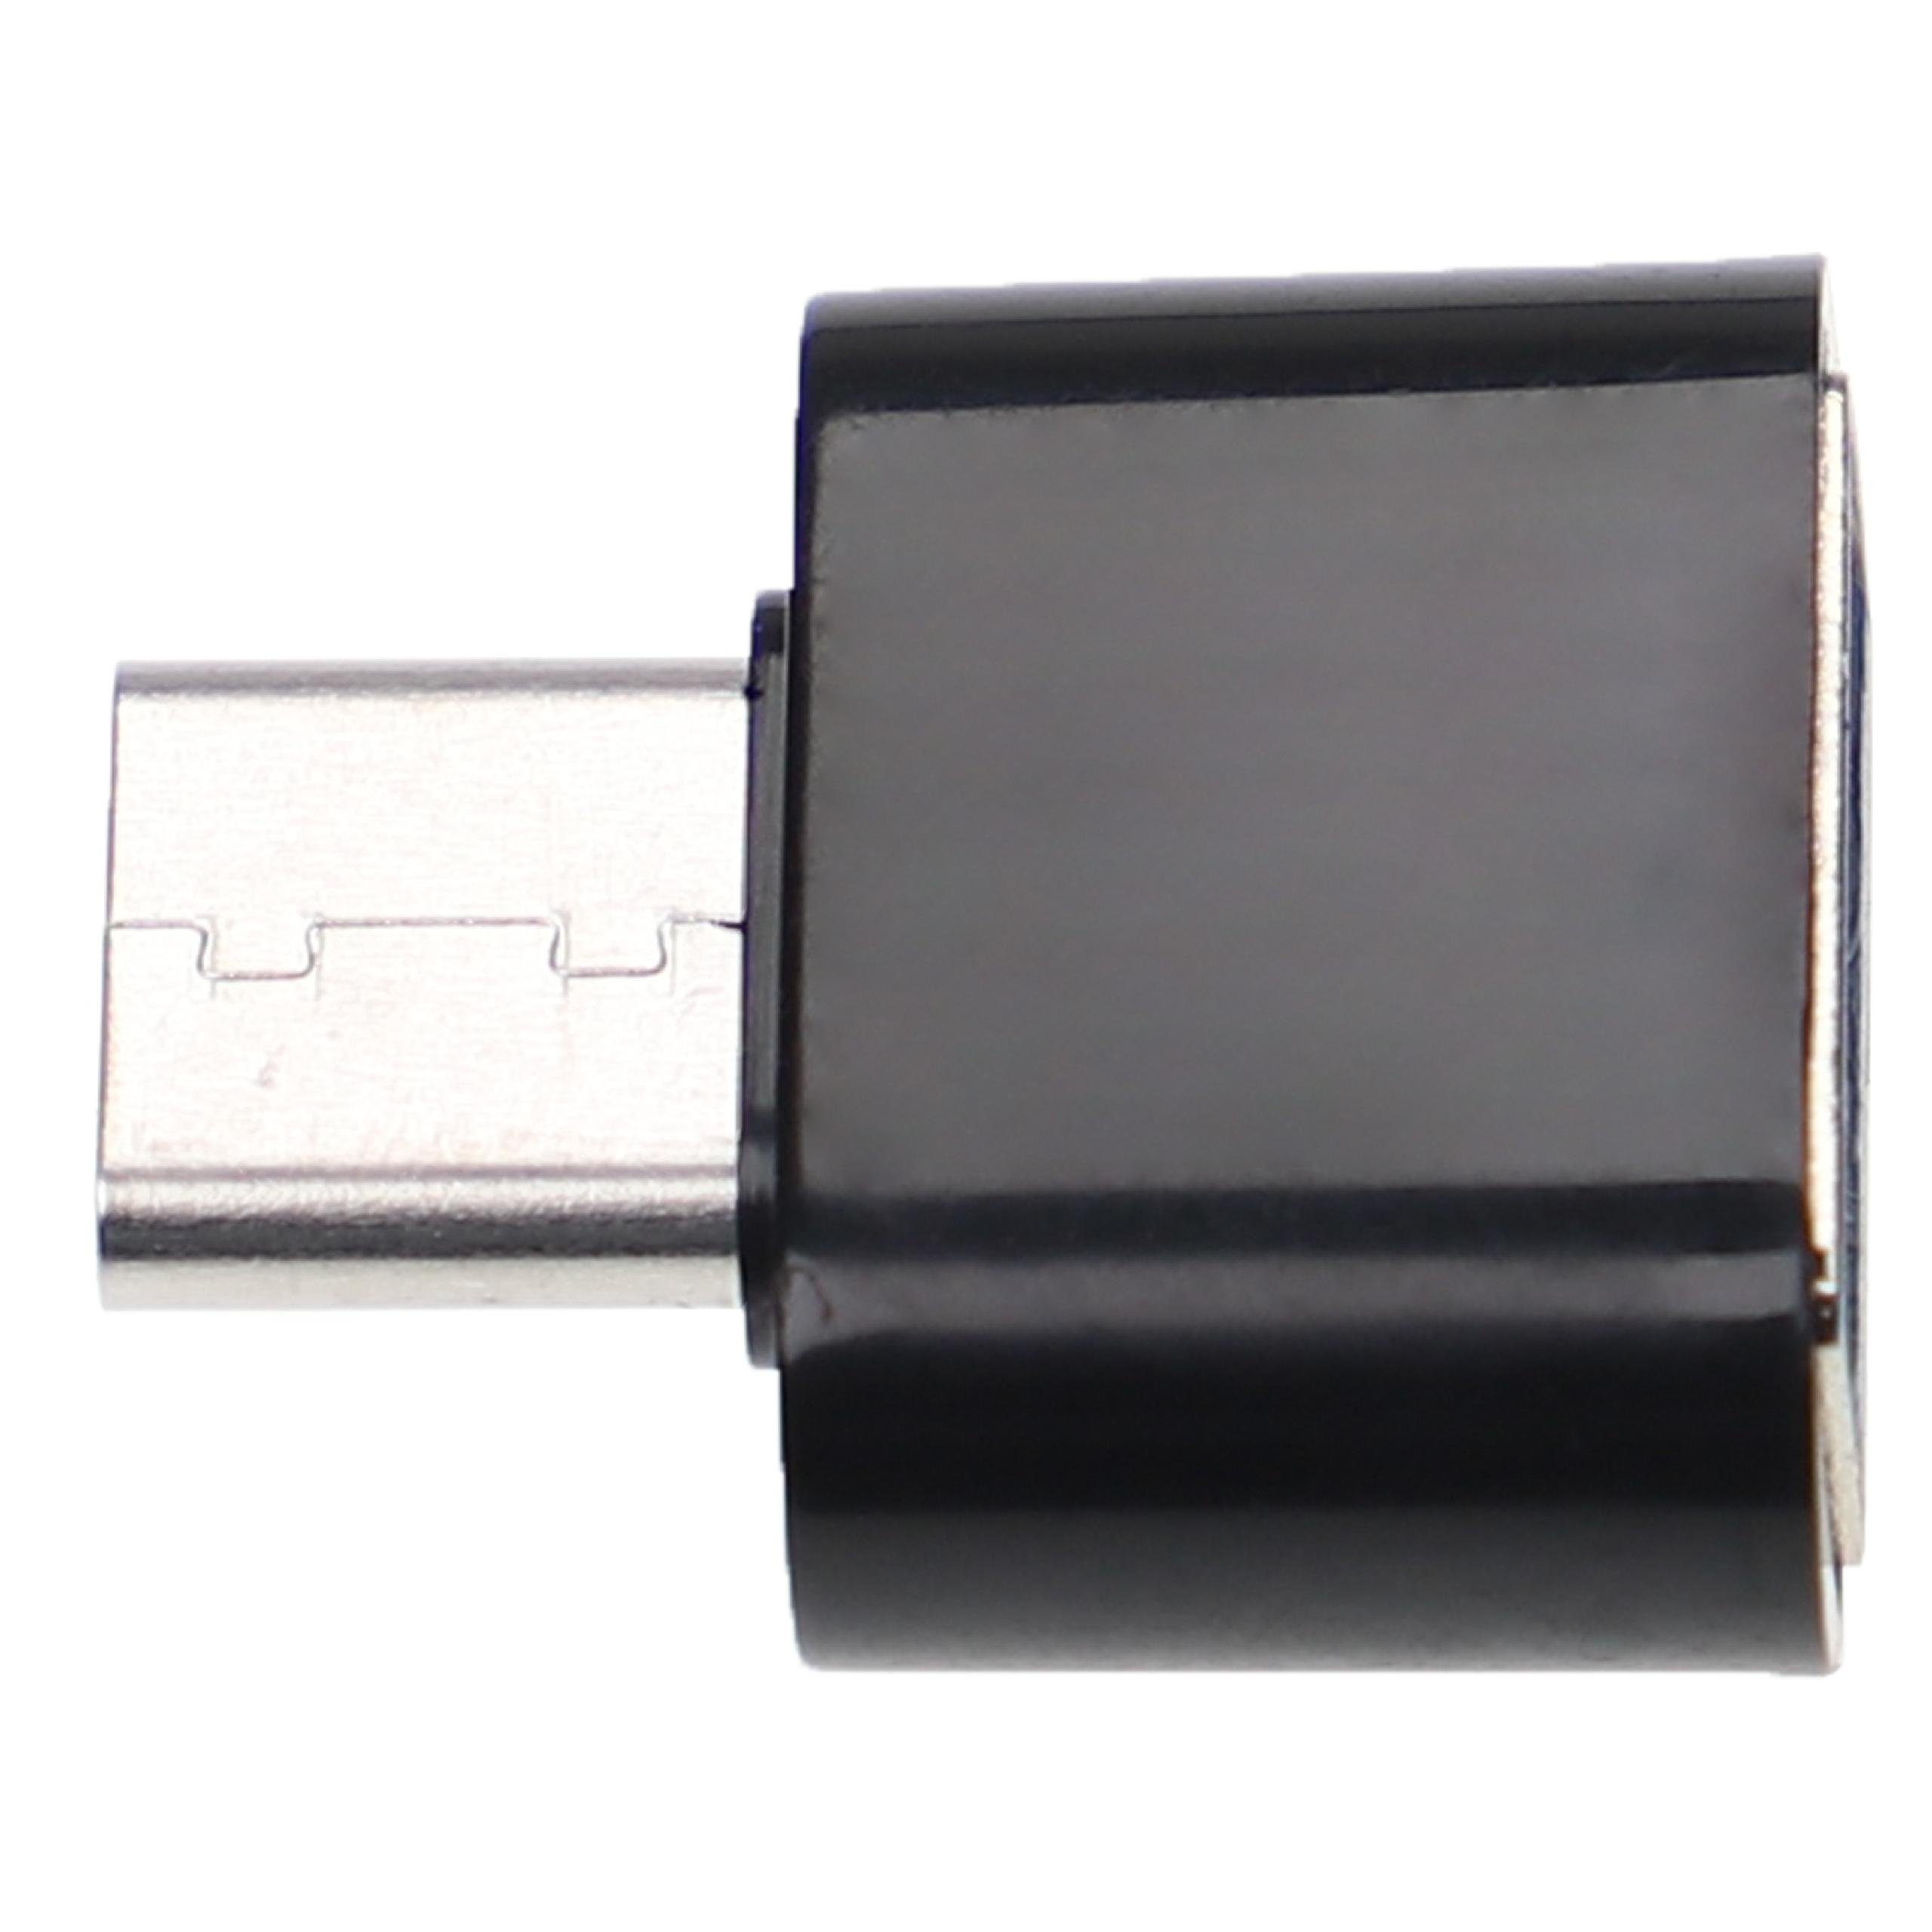 vhbw für Notebook / Tastatur / Computer / Smartphone USB-Adapter